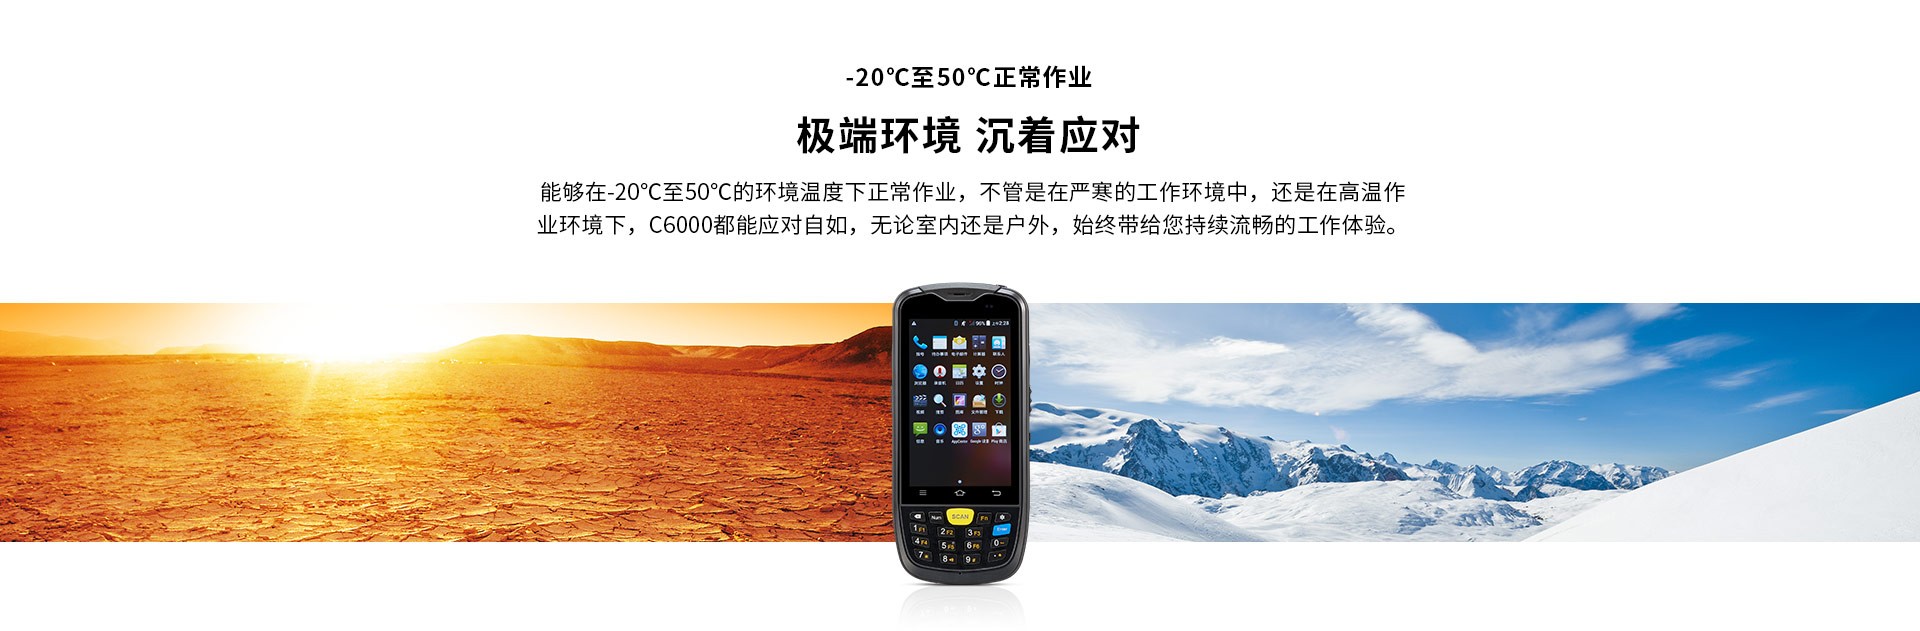 深圳成为chainwayC6000手持终端工业级PDA